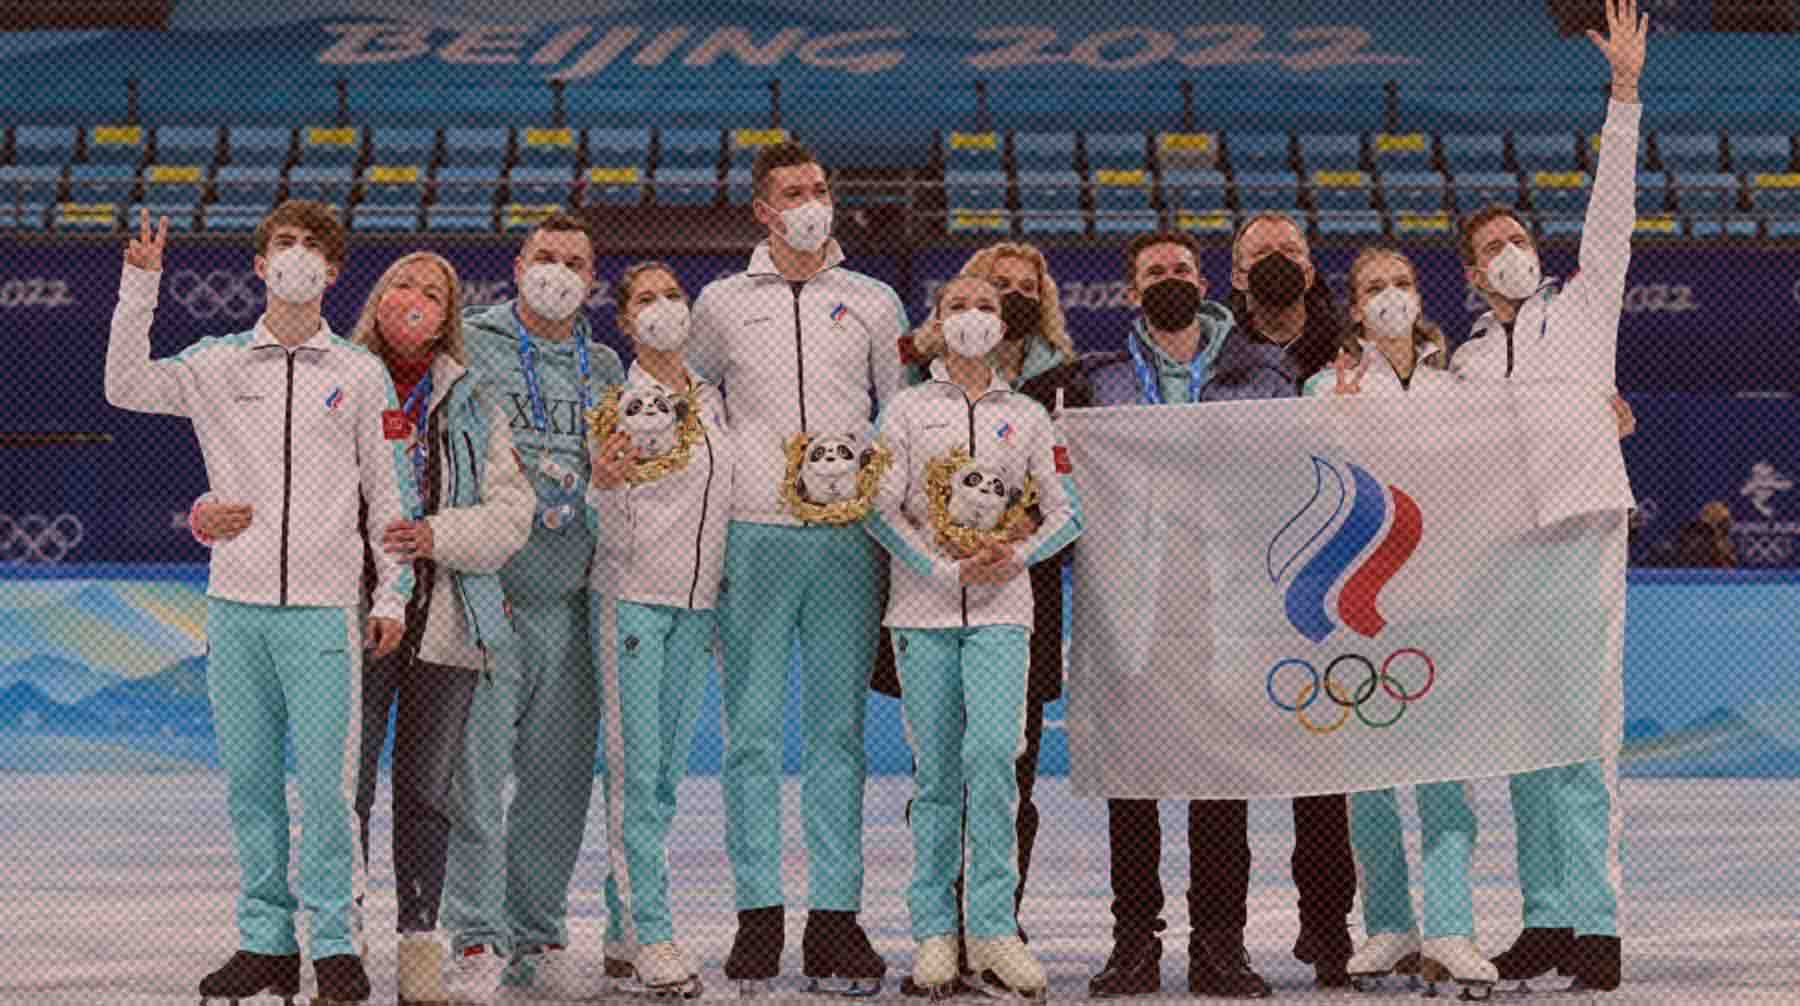 Dailystorm - Сборная России поднялась на первое место в медальном зачете на Олимпиаде в Пекине